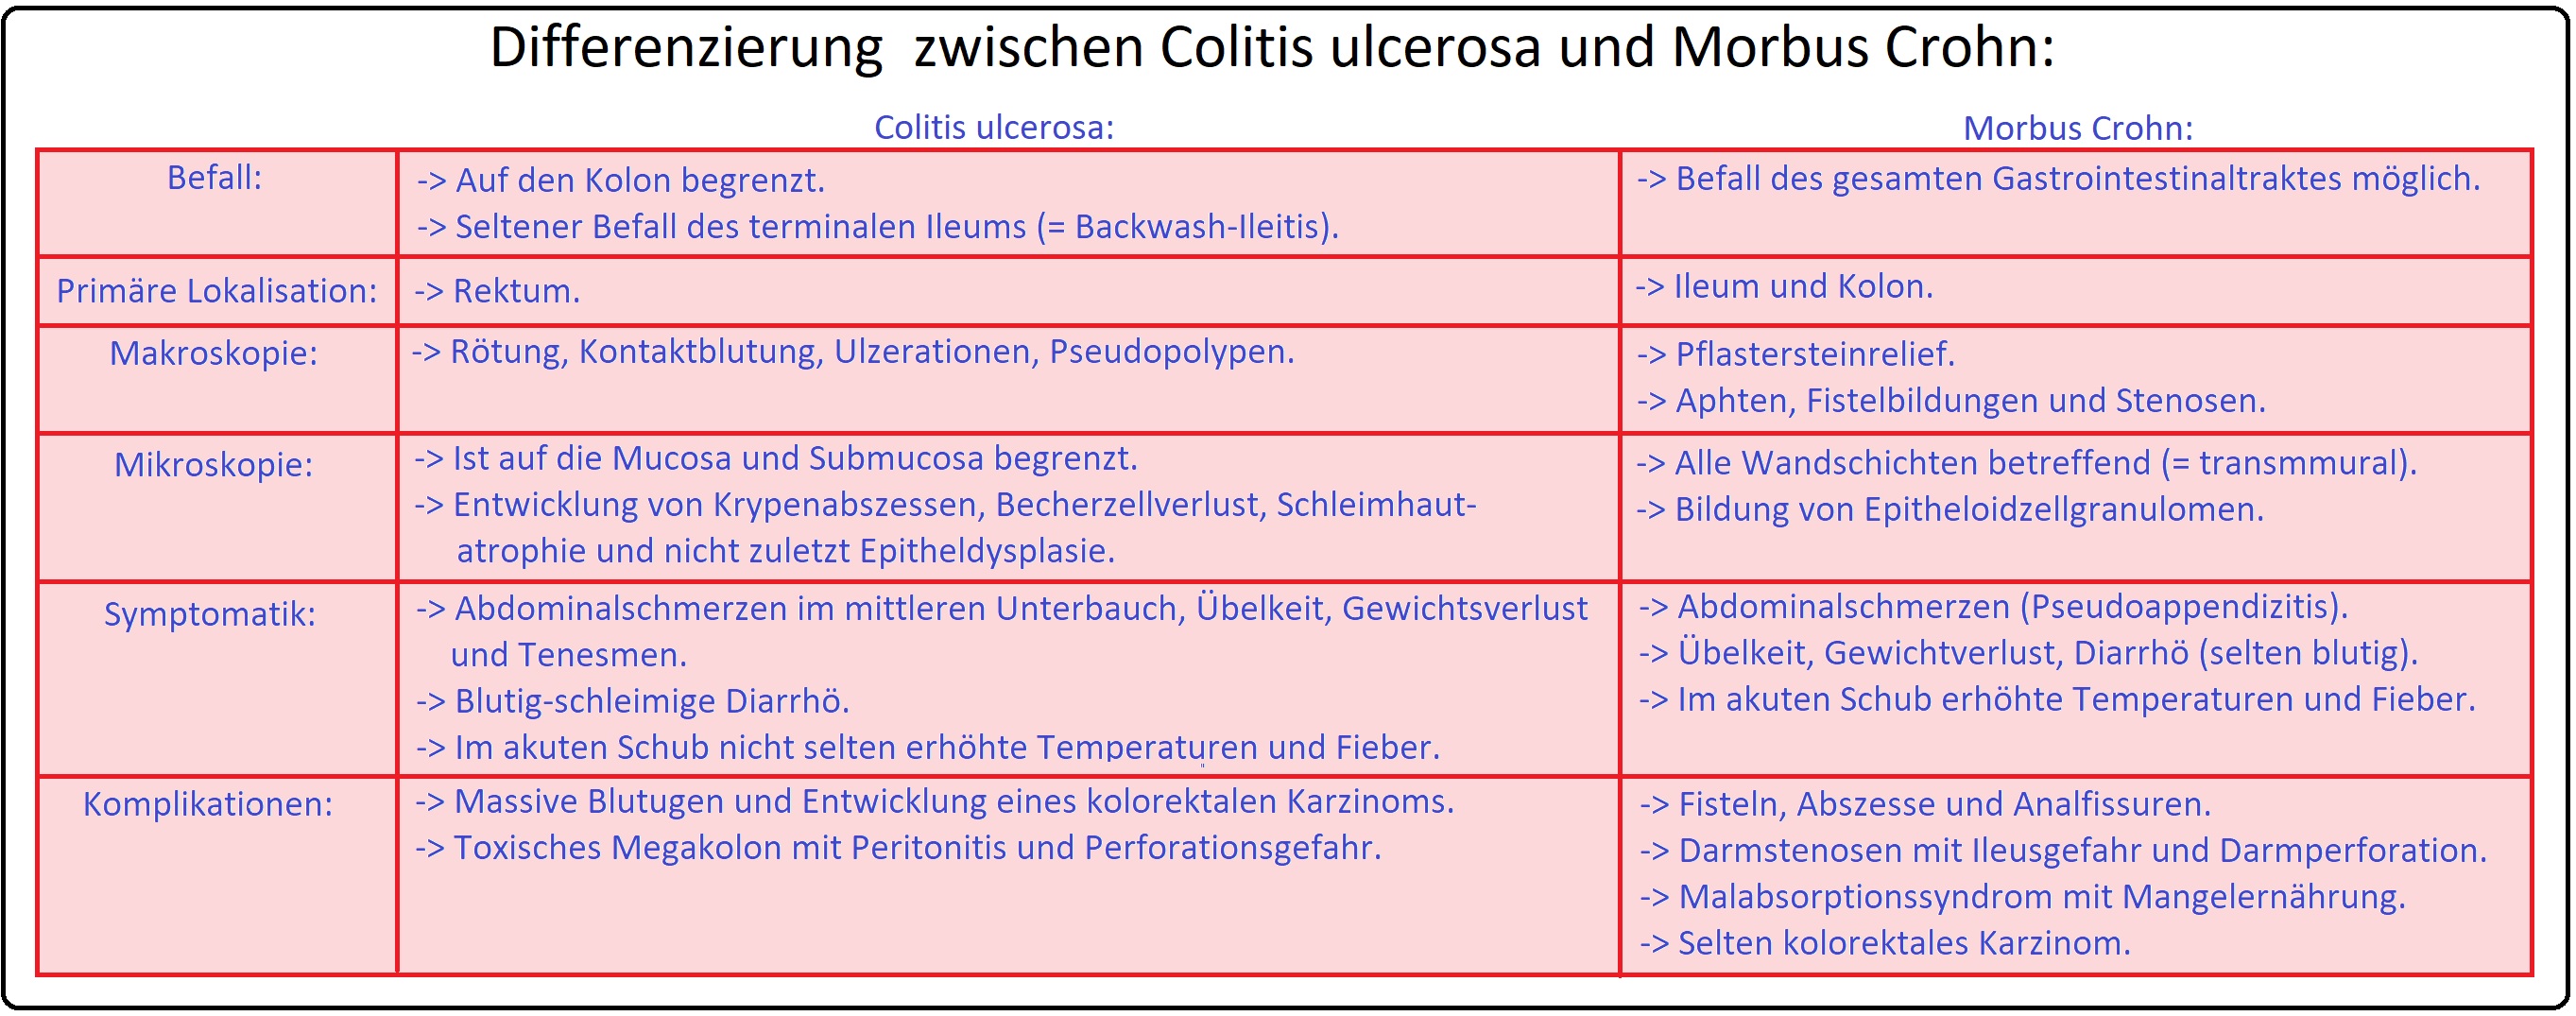 565 Differenzierung zischen Colitis ulcerosa und Morbus Crohn